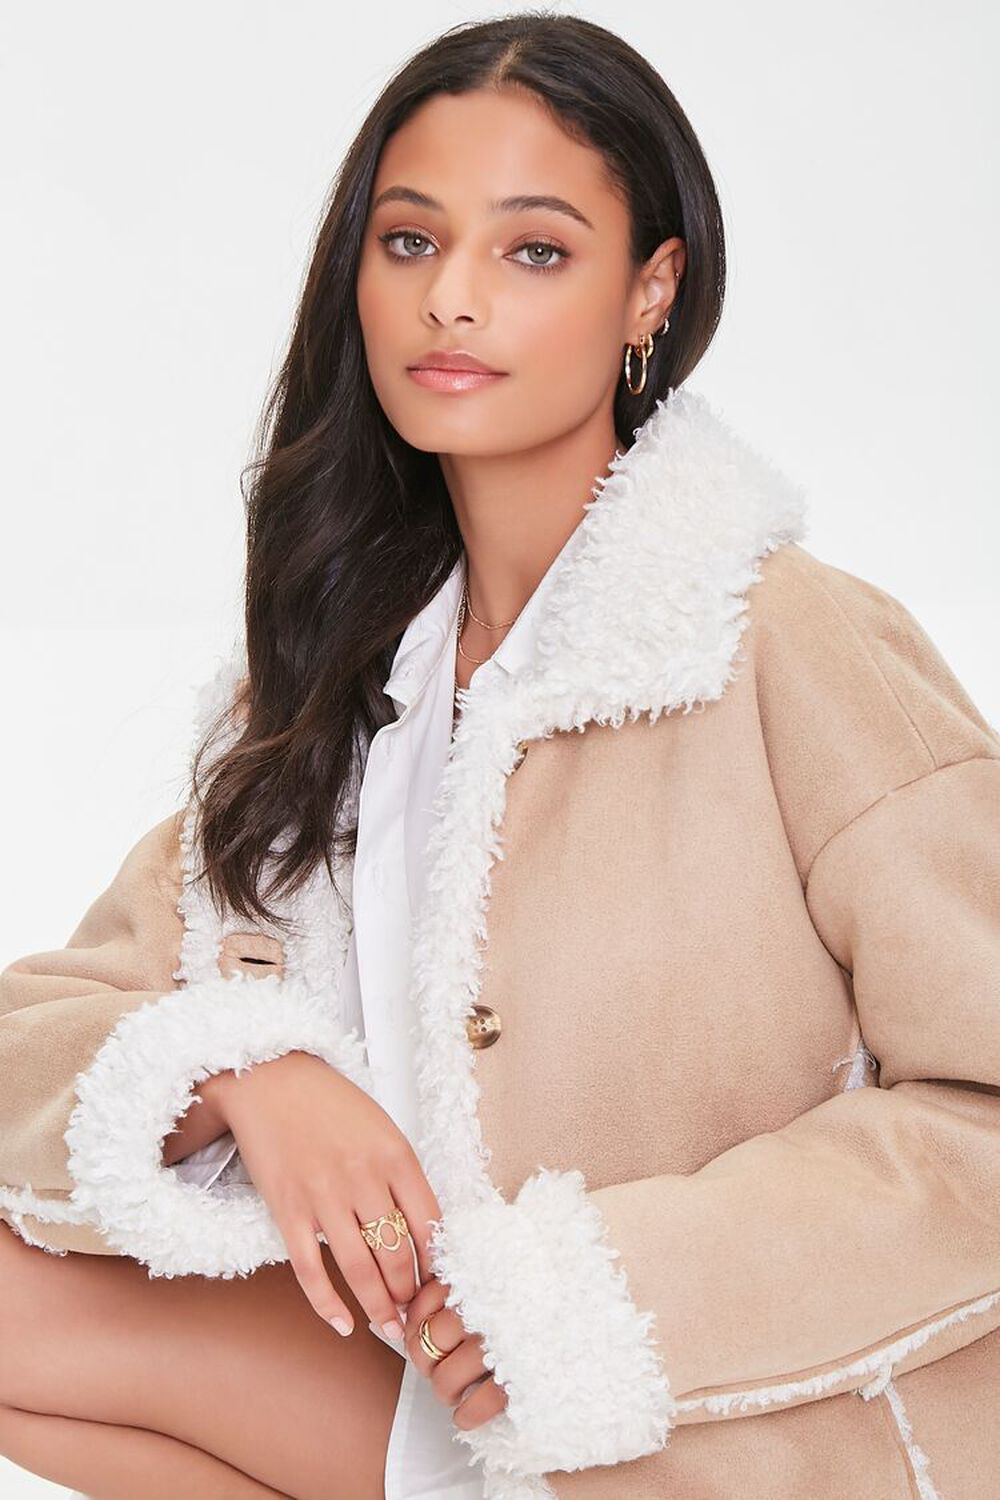 Forever 21 Women's Longline Faux Fur Coat